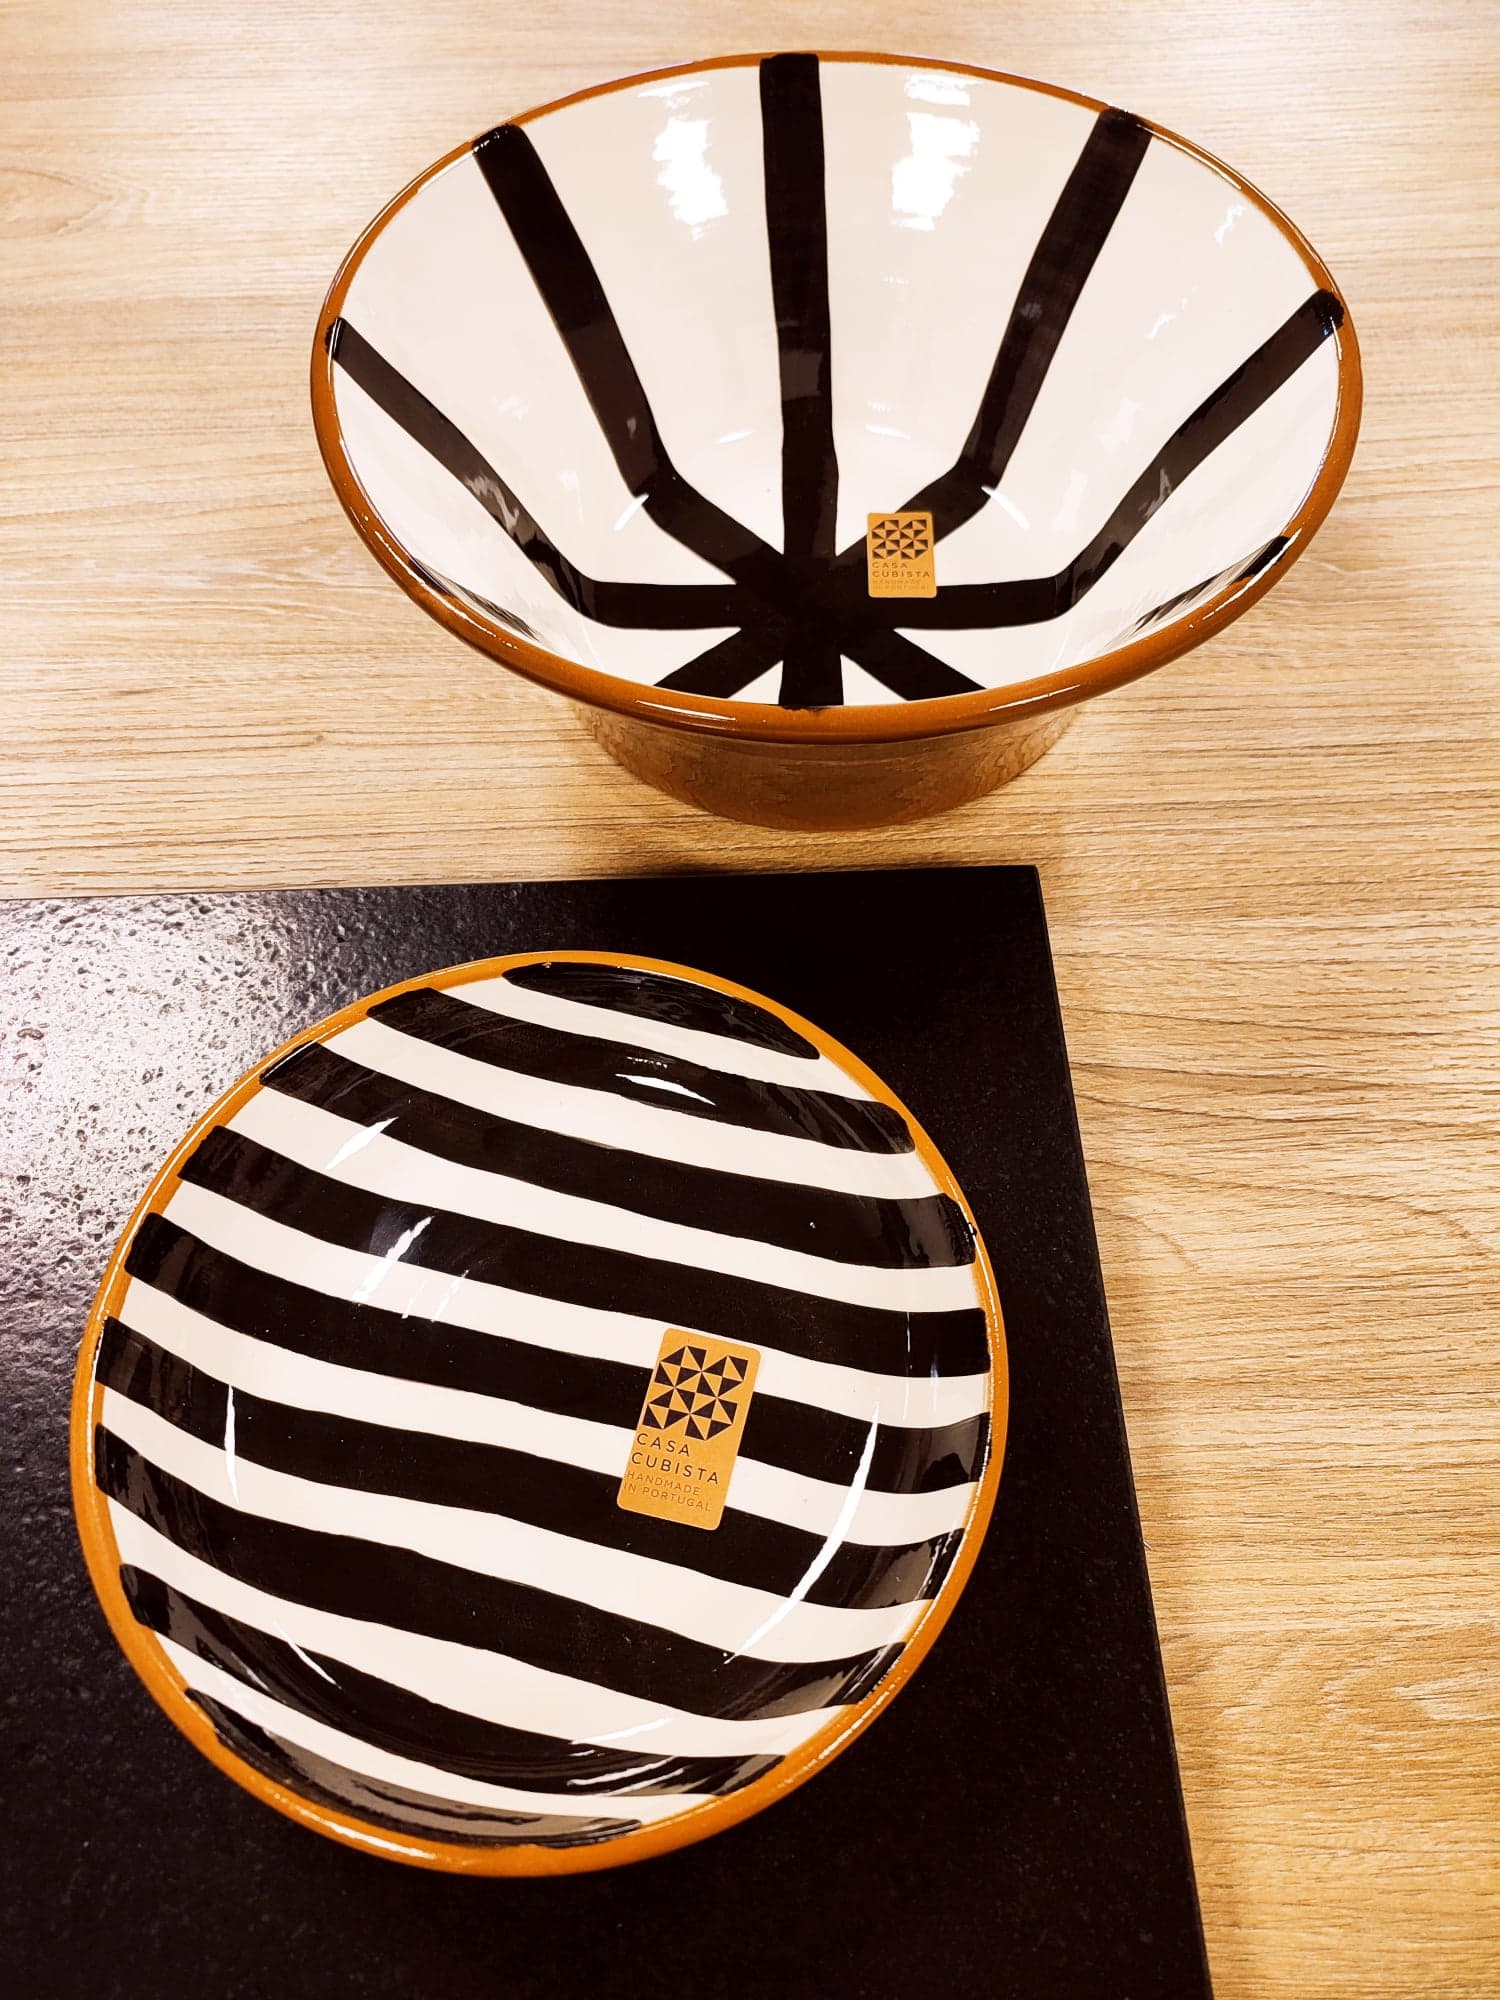 saladier rayures rayons Olhao Casa cubista Algarve céramique noir et blanc N&B fait à la main artisanat handmade portugal épicerie fine artisanat Saudade concept store cherbourg normandie vaisselle décoration